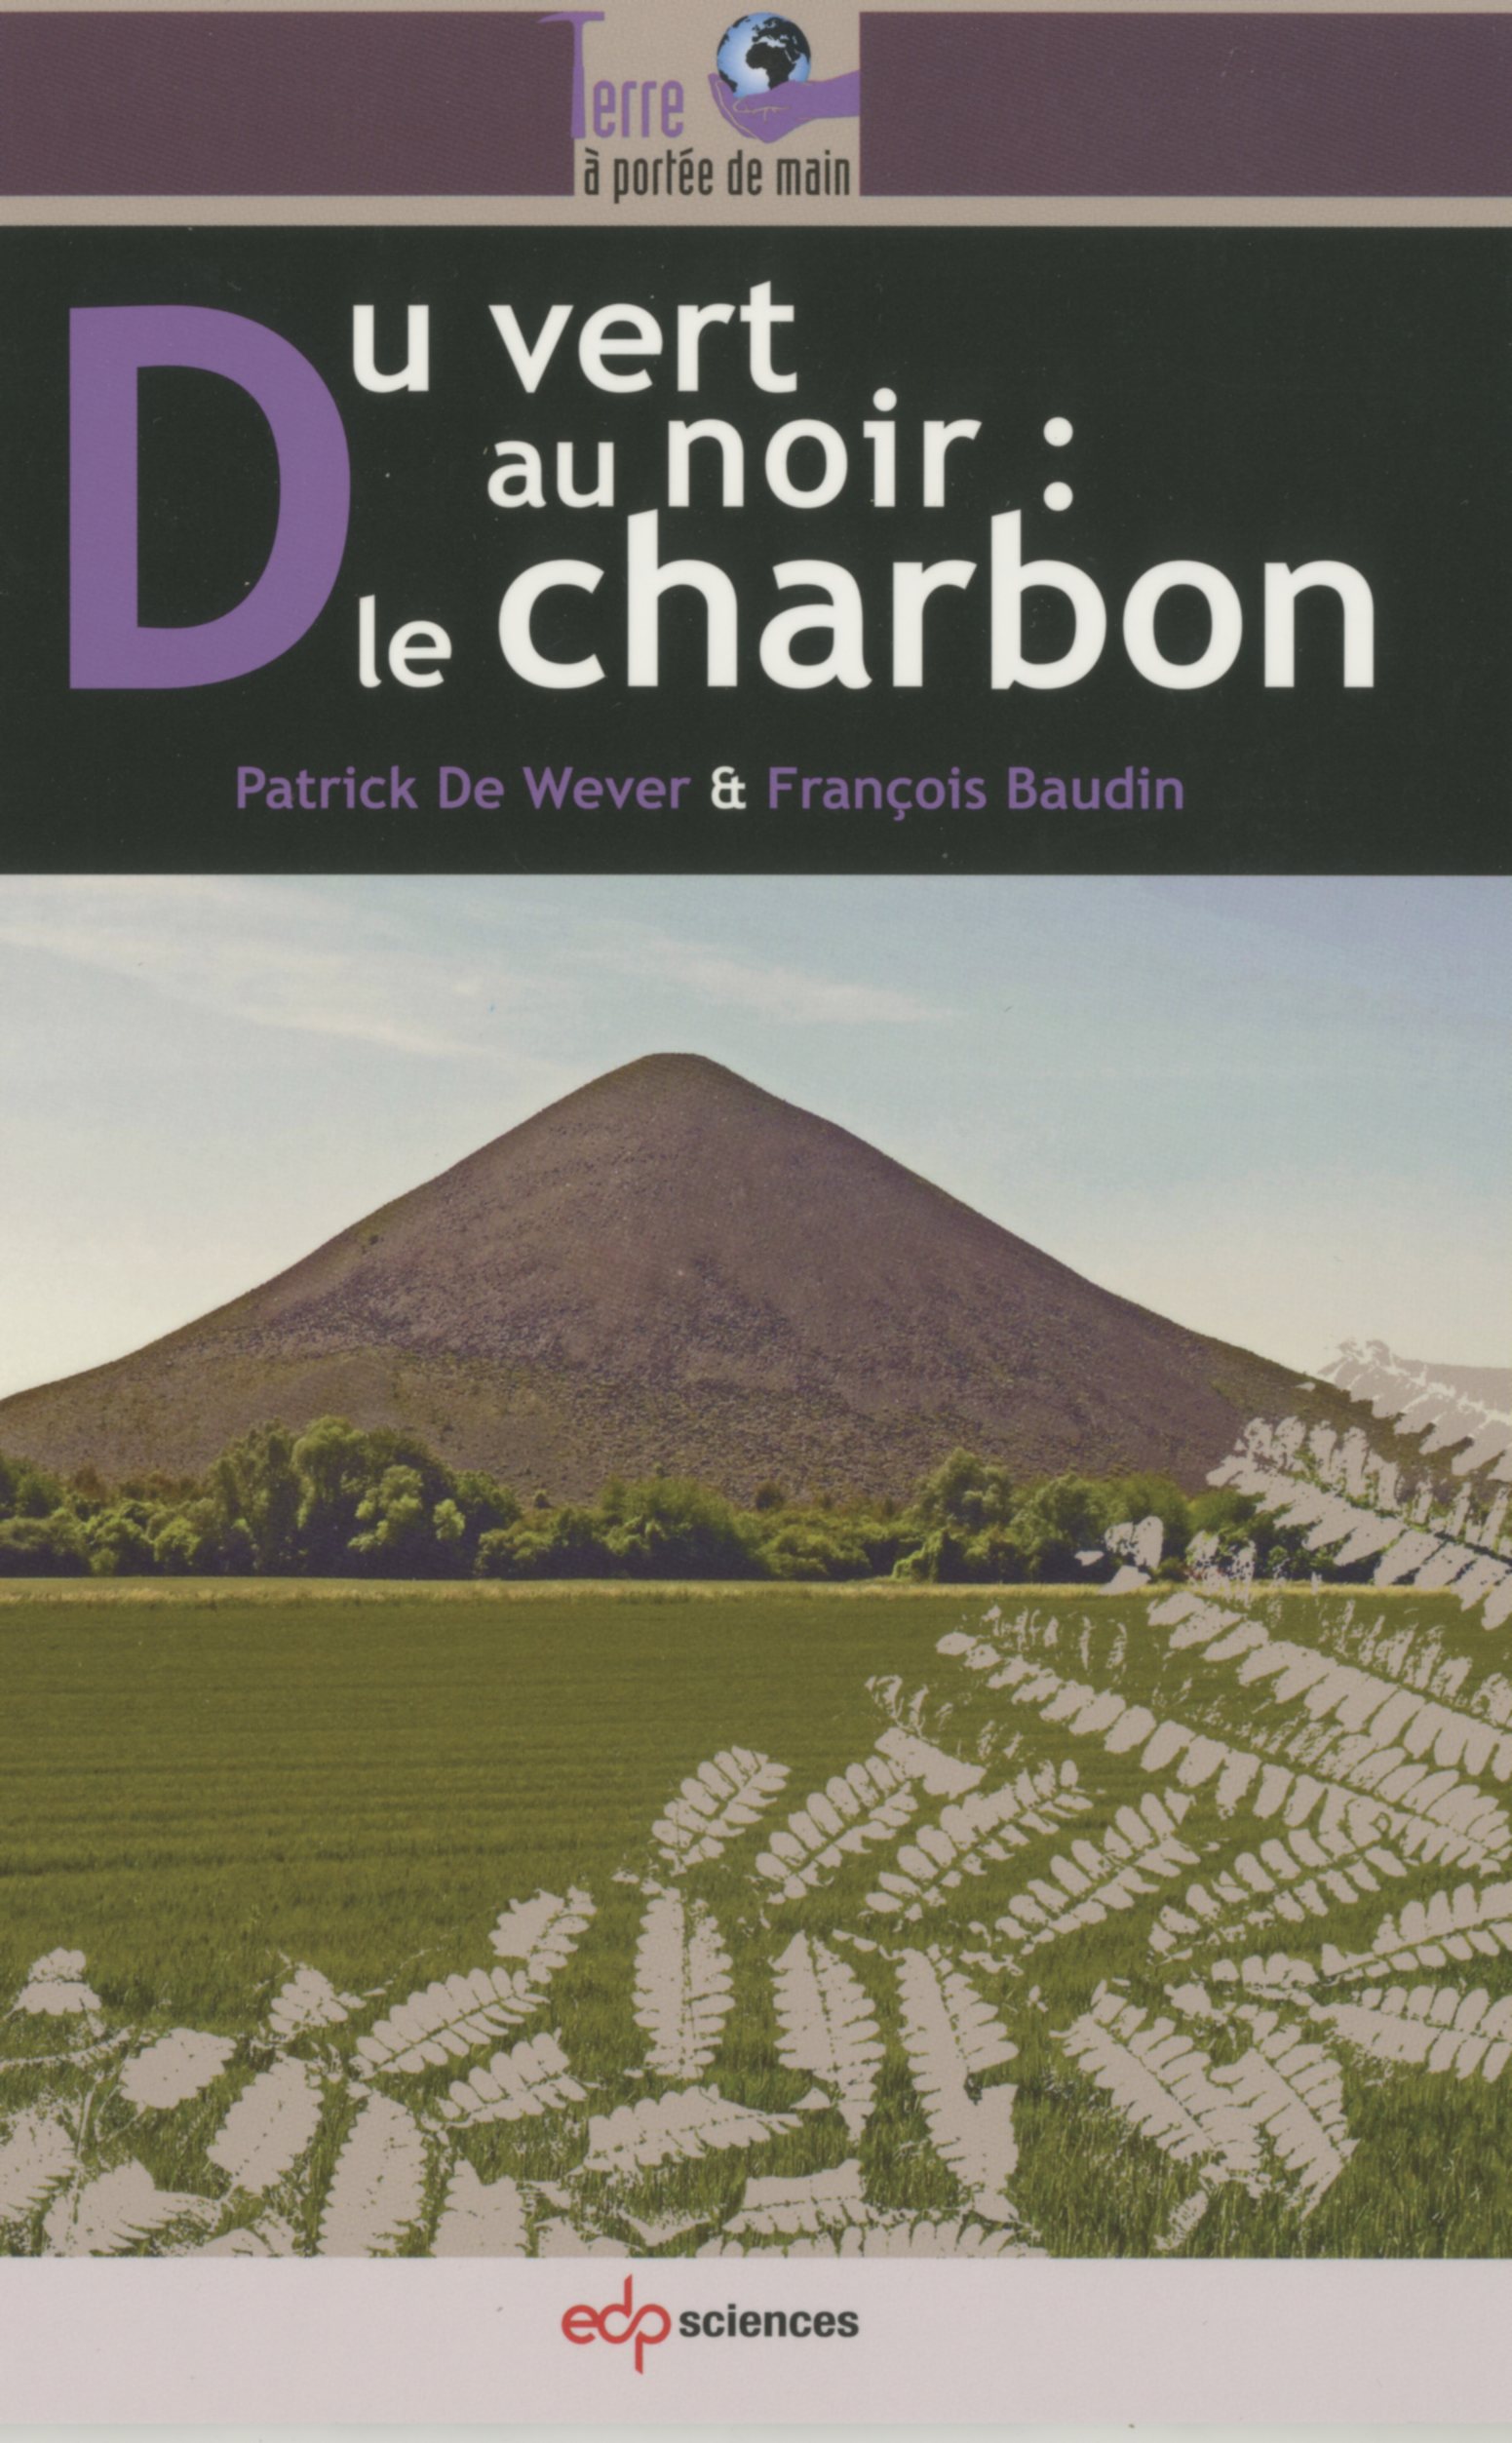 LIVRE DU VERT AU NOIR : LE CHARBON